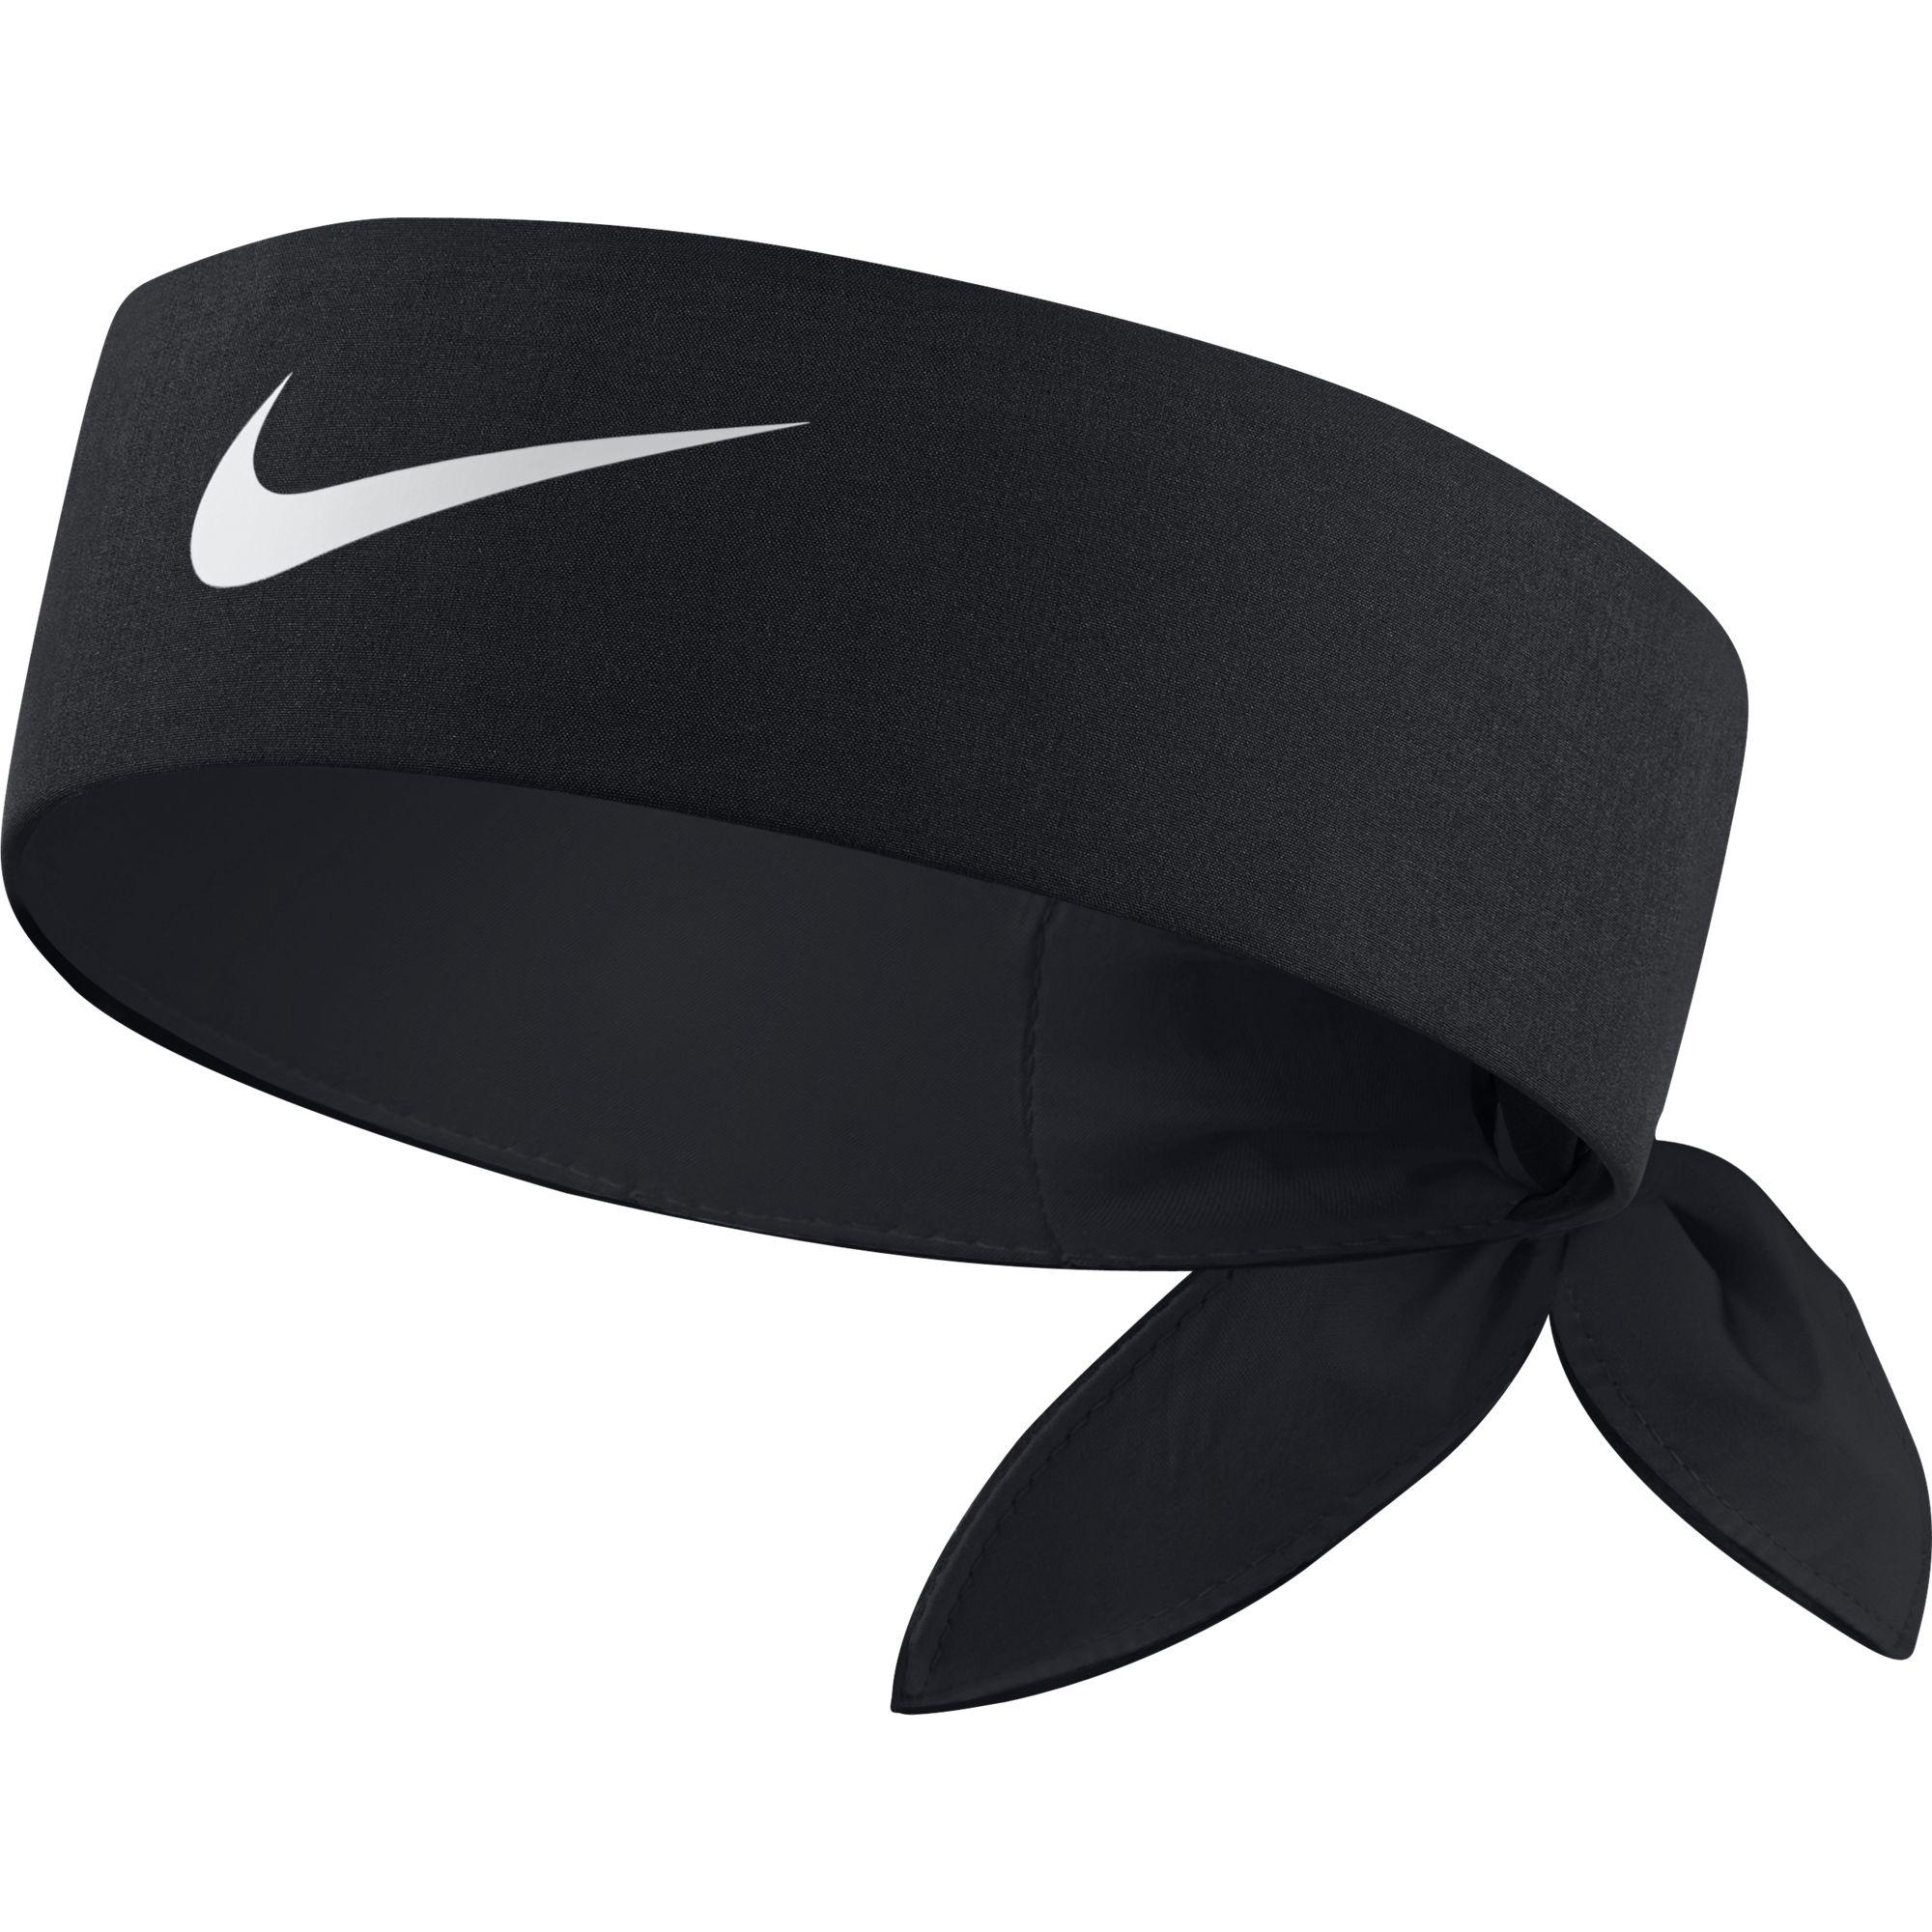 Nike Tennis Headband - Black - Tennisnuts.com